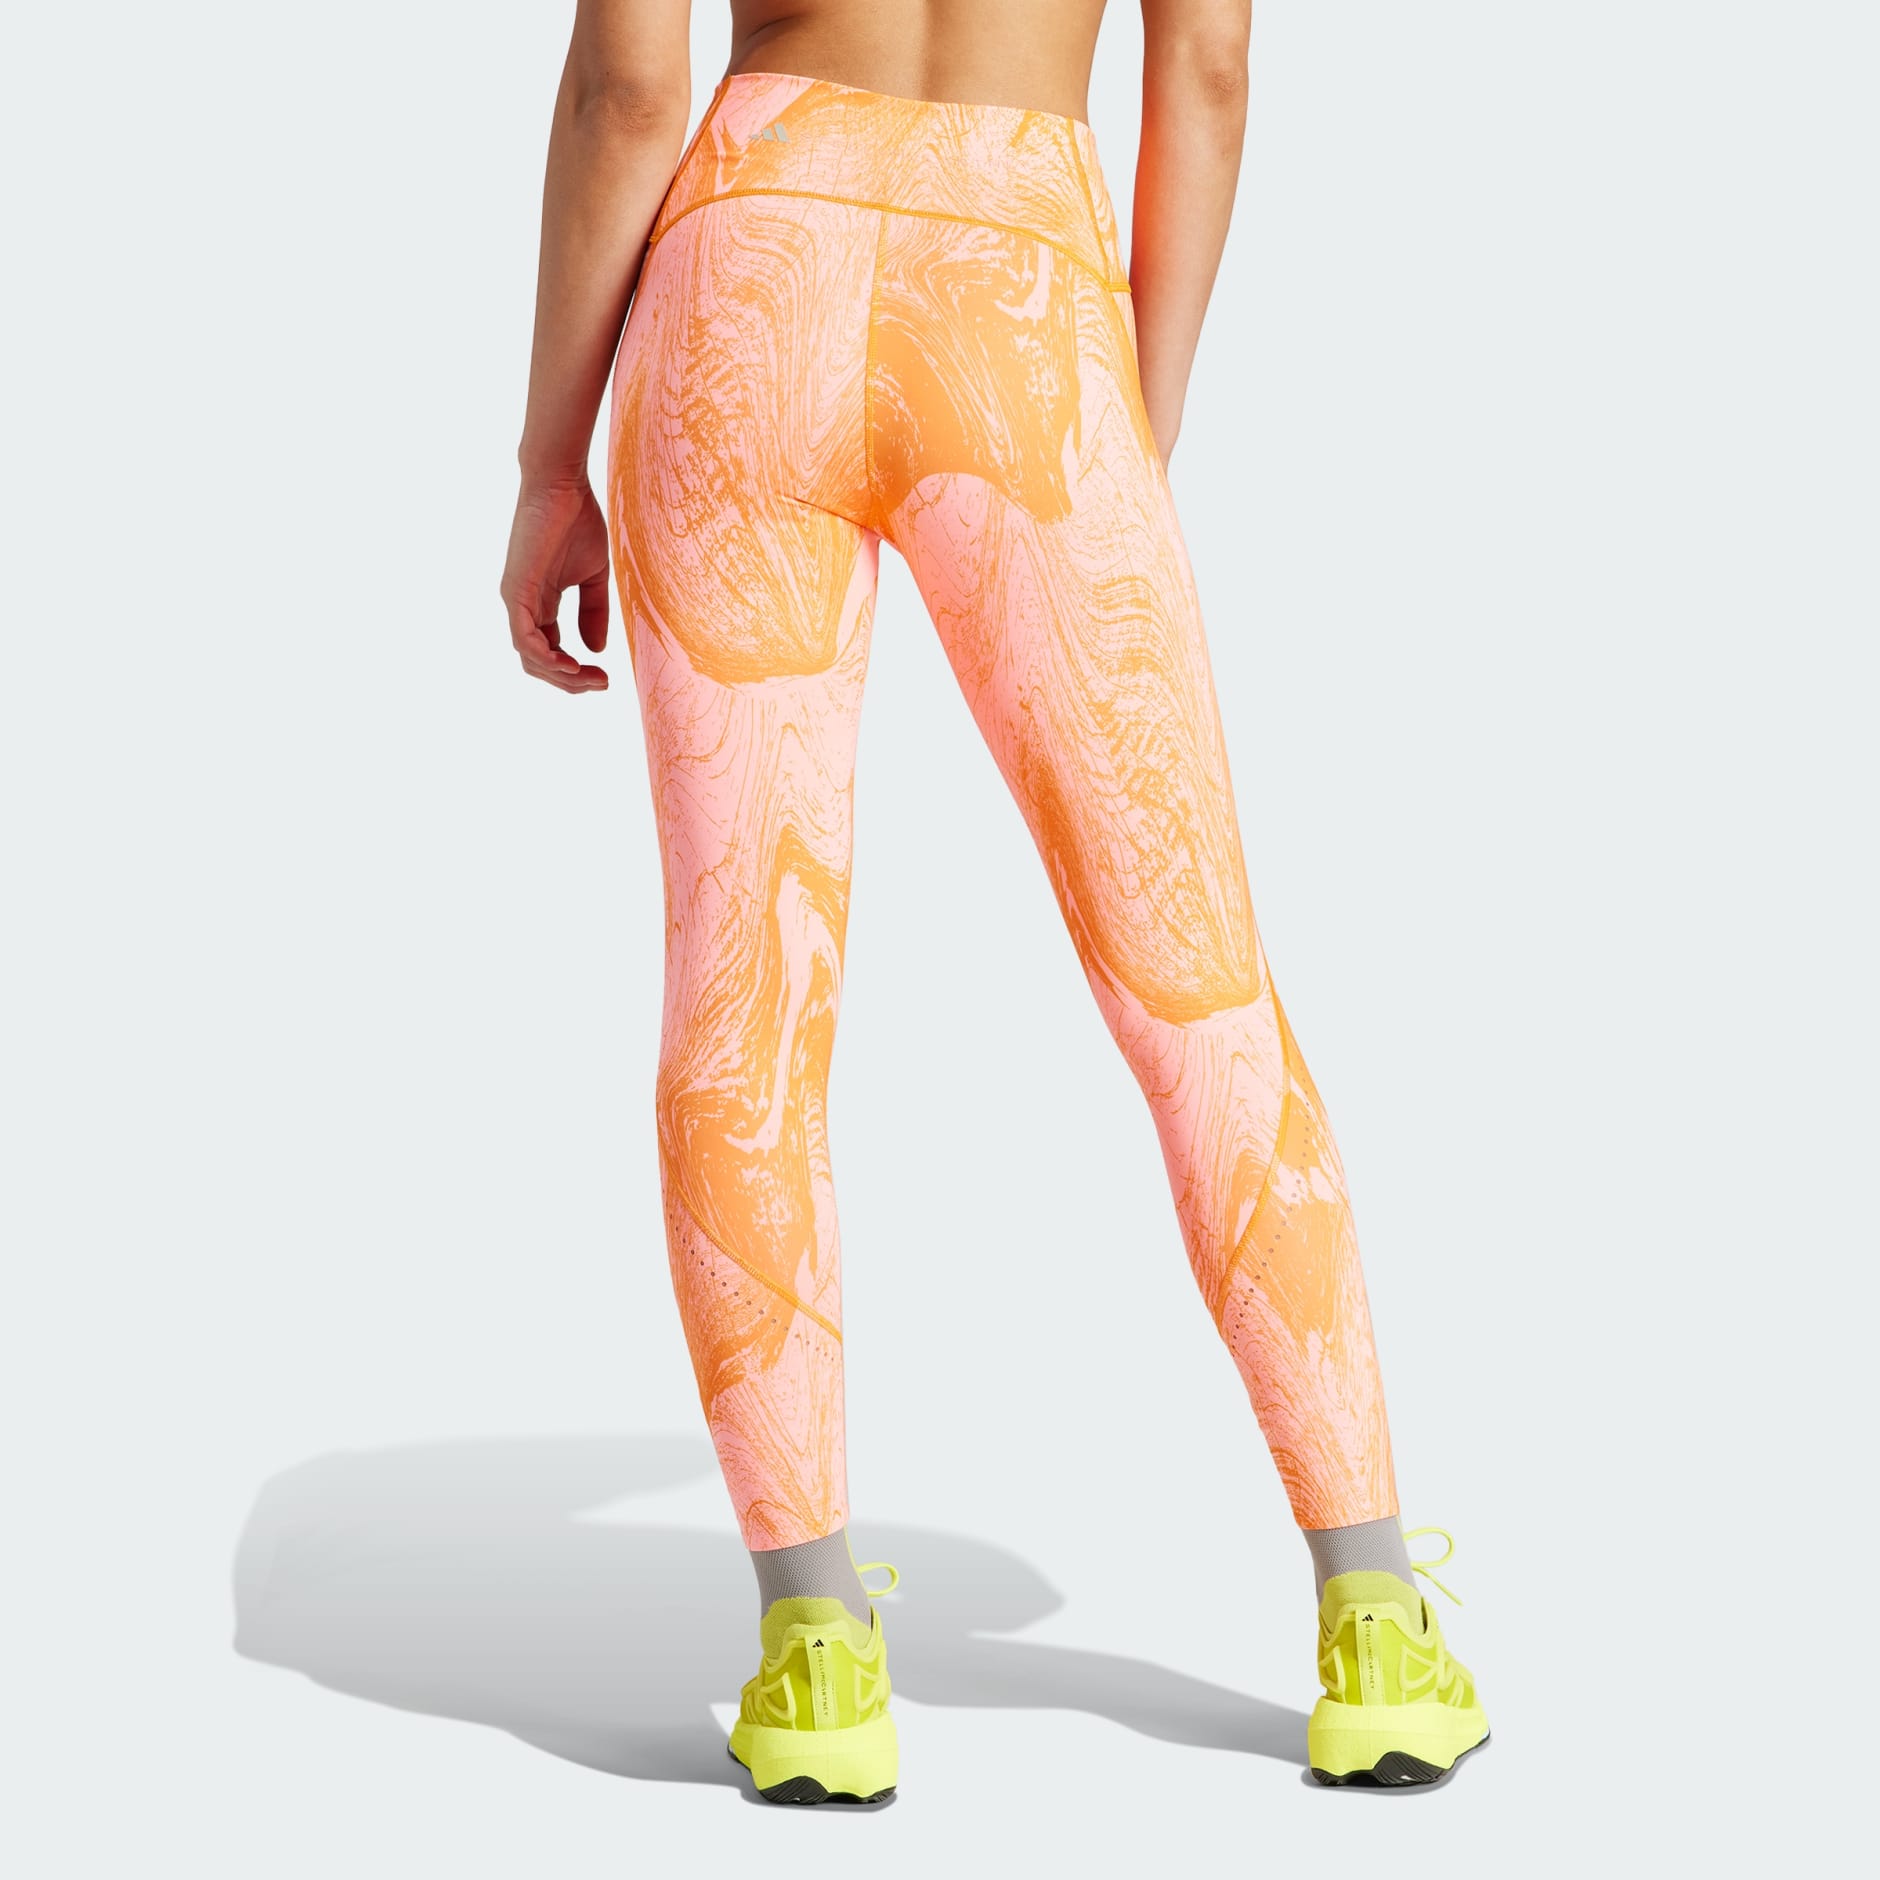 Womens Nike 7/8 Training Lazer Cut Tights XL Orange Tight Gym